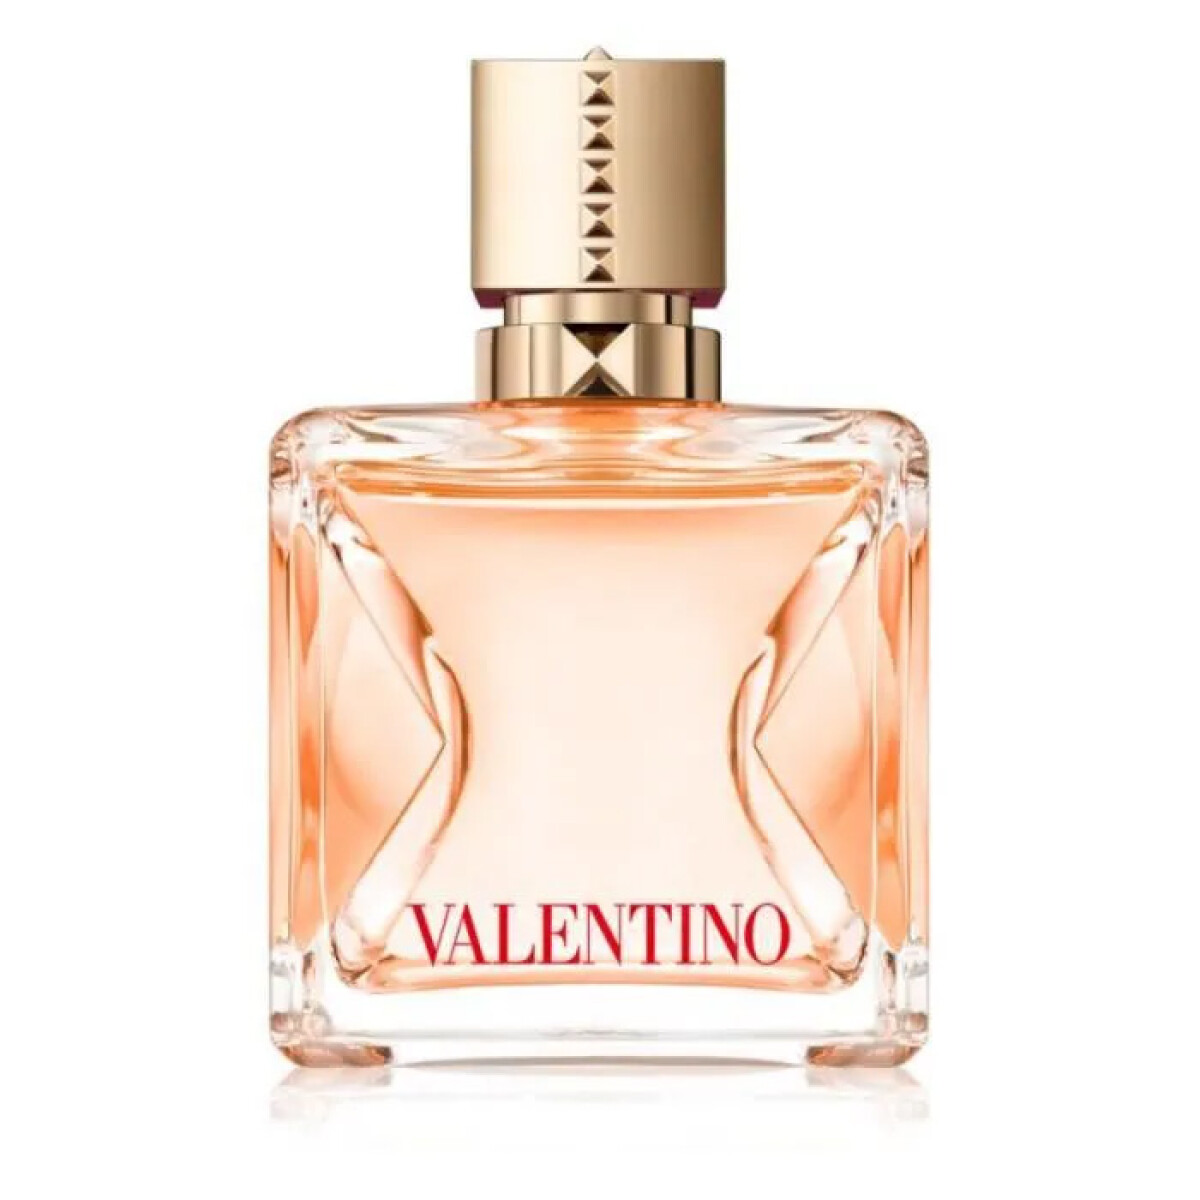 Perfume Valentino Voce Viva Intense Edp 50ml 